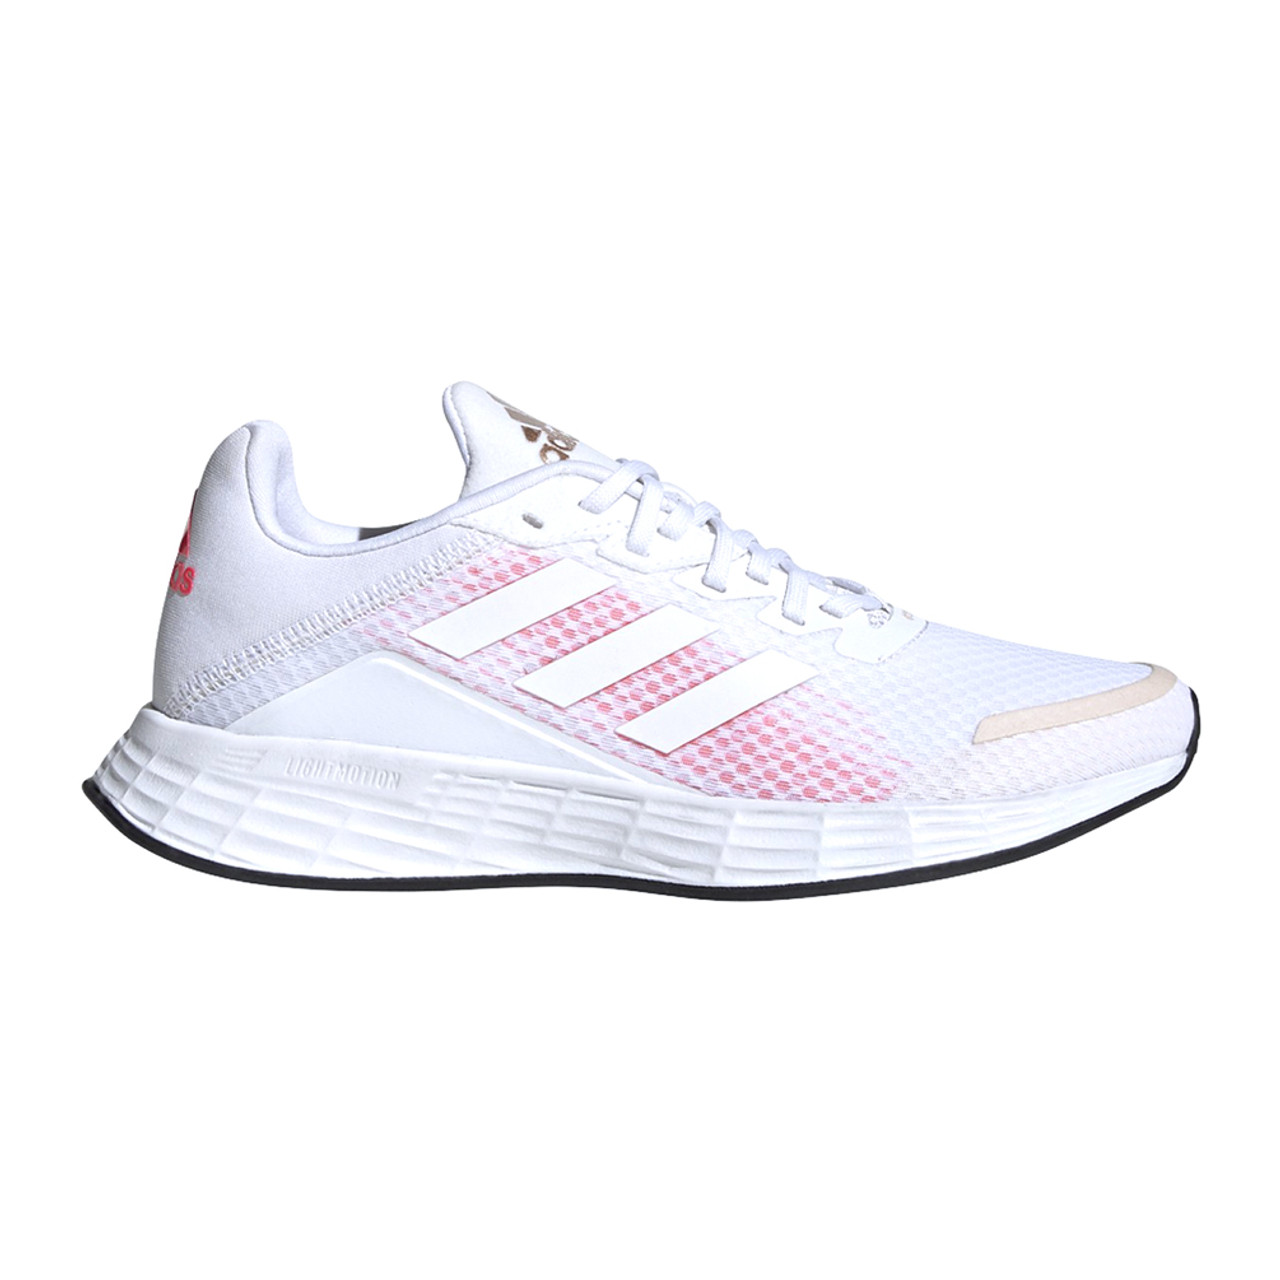 New Adidas Women's Duramo SL Shoe Cloud White/Cloud White/Pink 6 - Cloud White/Pink | Discount Adidas Ladies Athletic Shoe & More - Shoolu.com | Shoolu.com